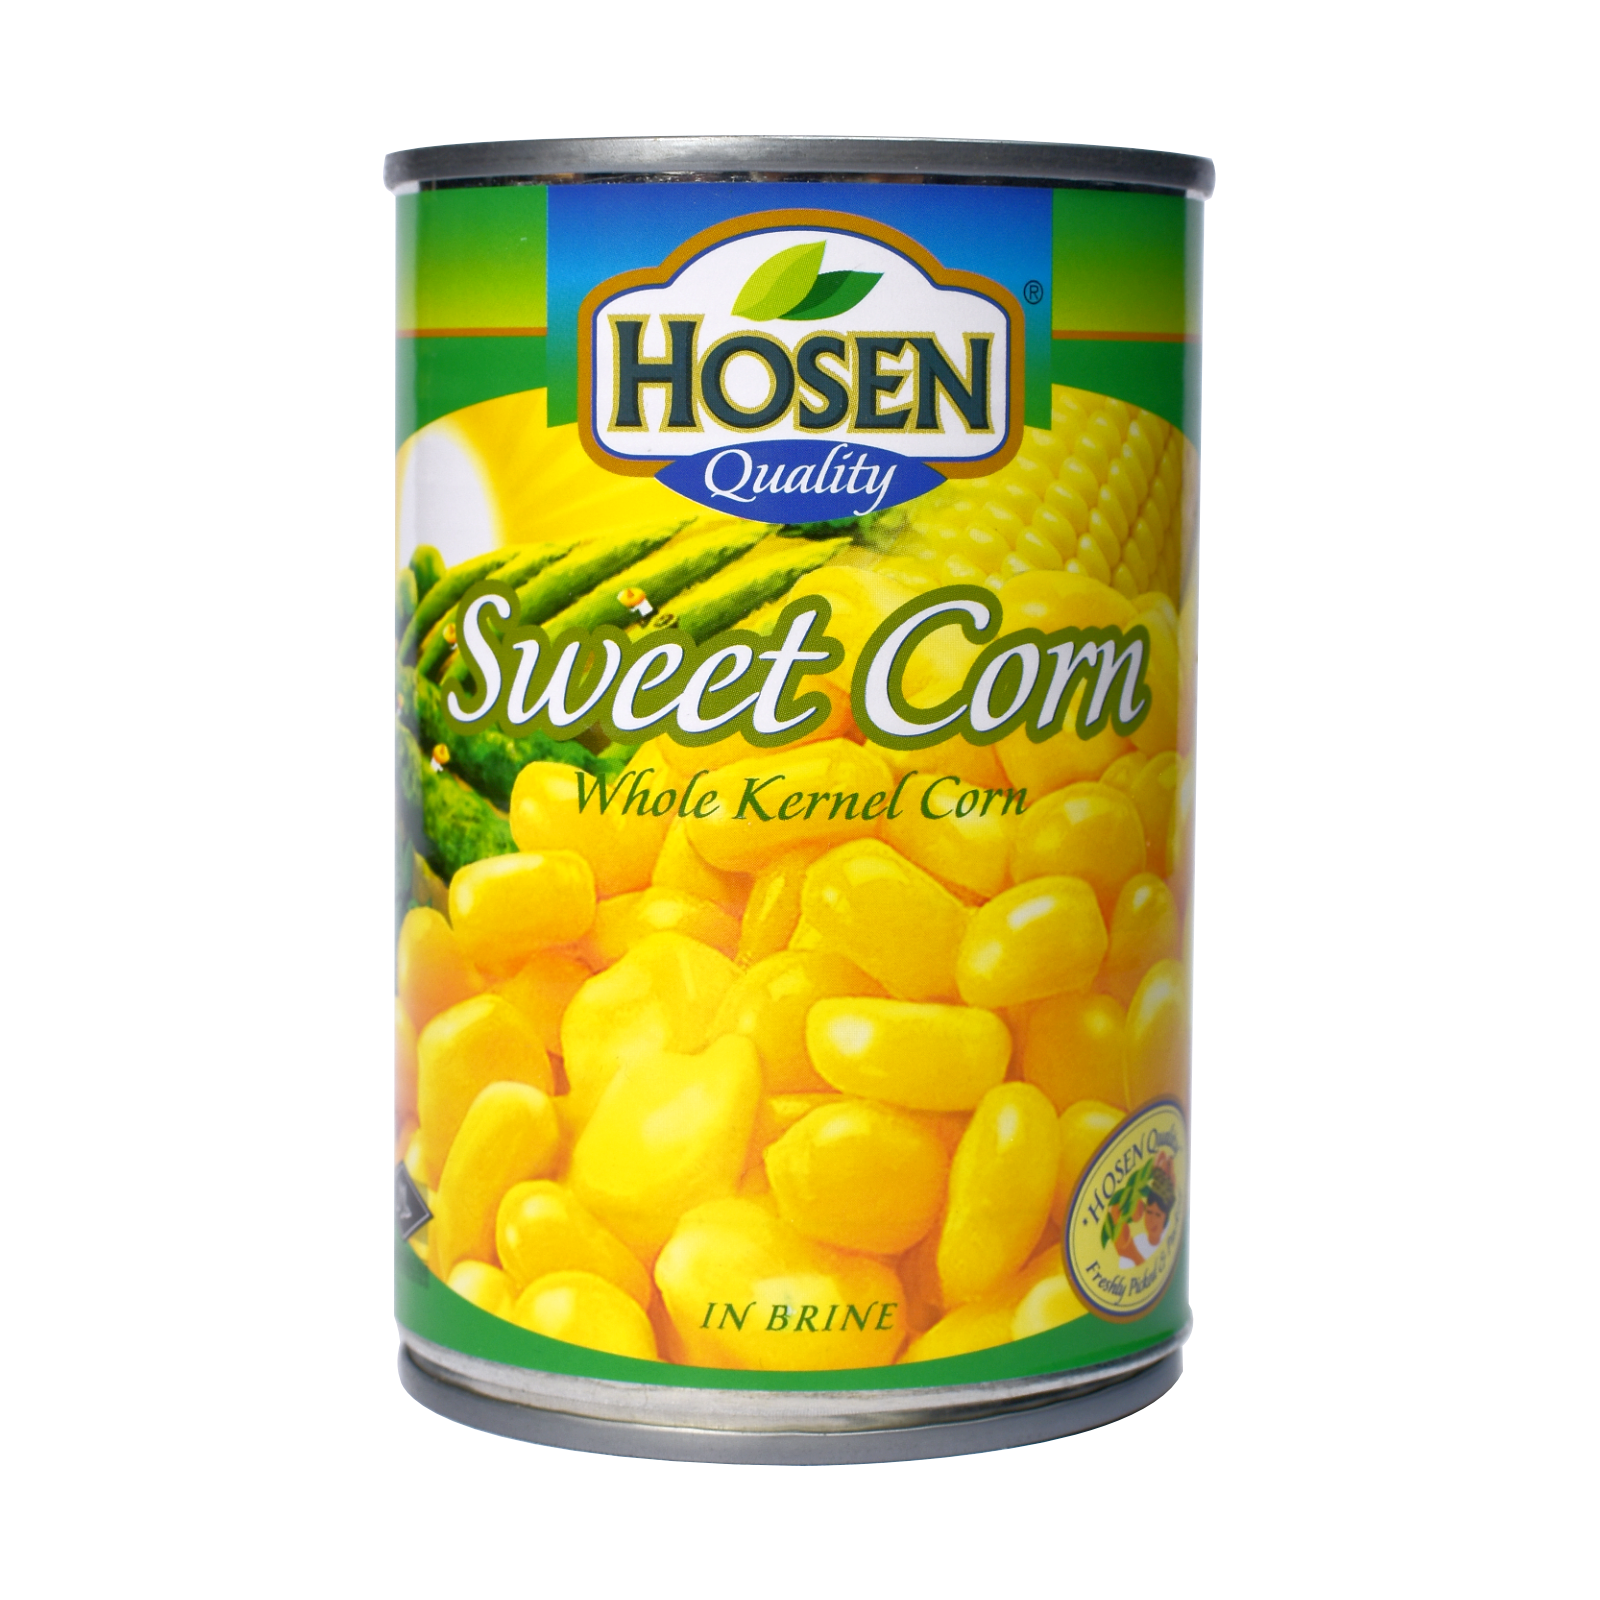 Hosen Sweet Corn Whole Kernel Corn.png